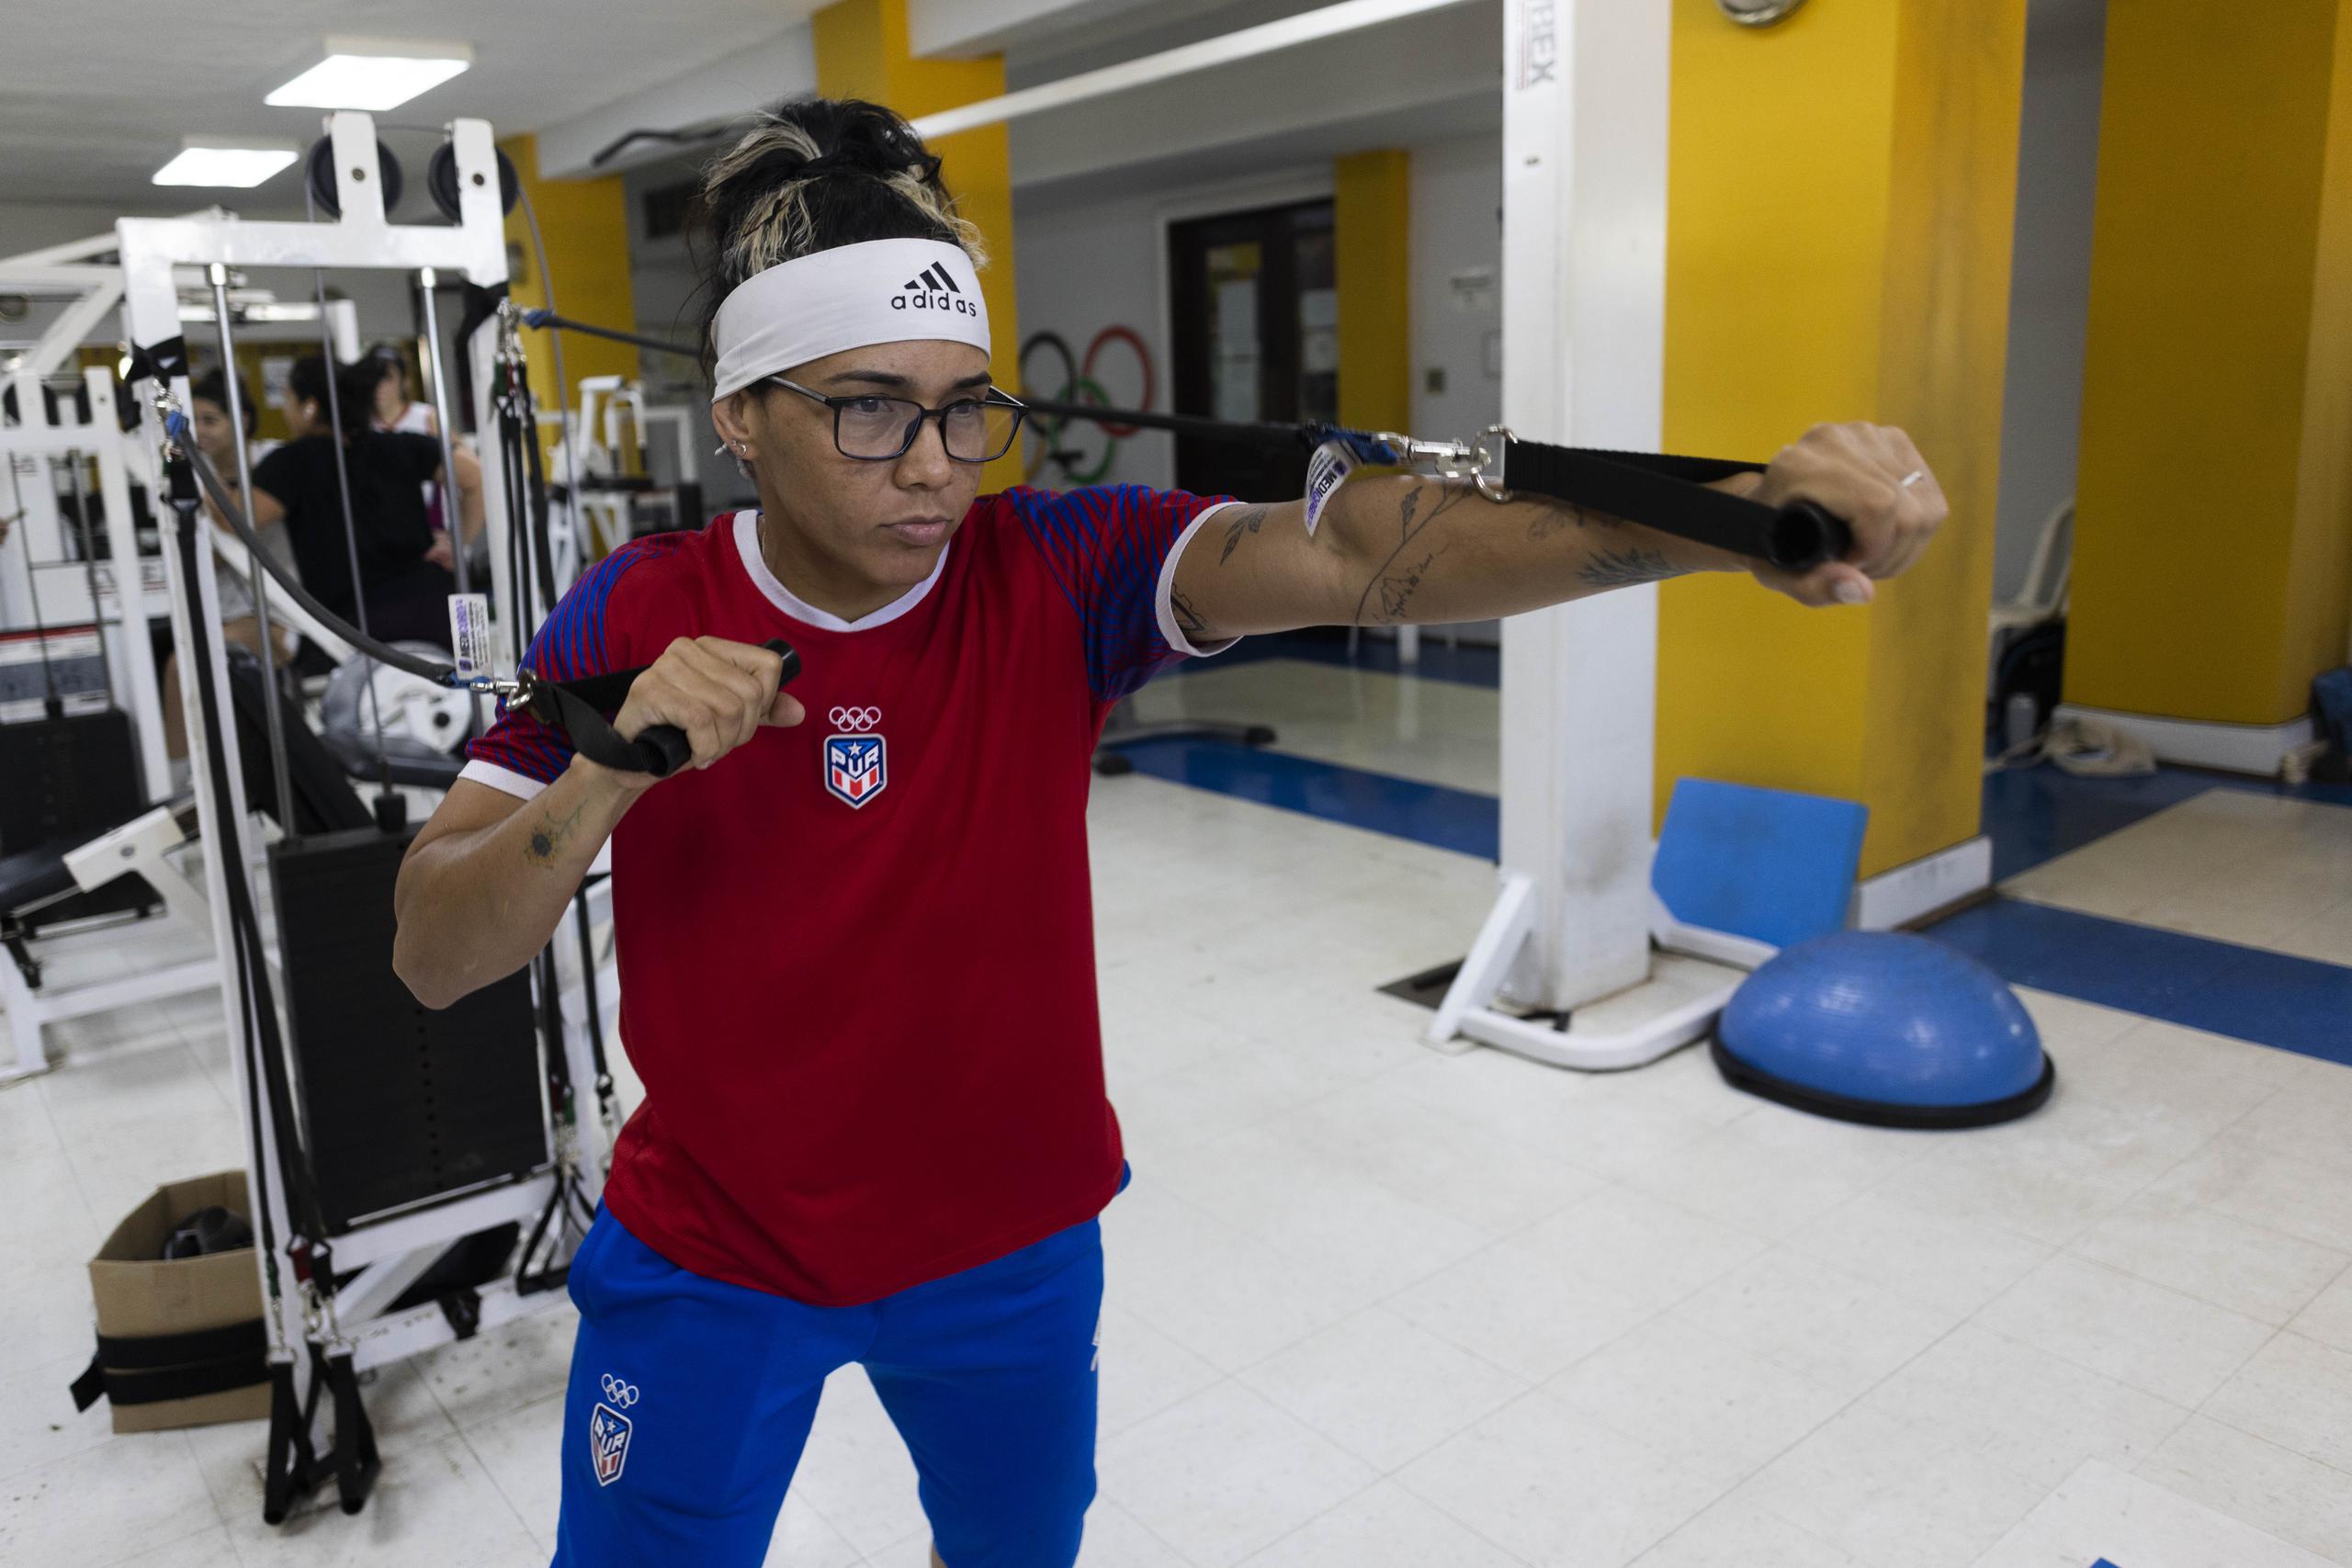 Ashleyann trabaja en el gimnasio de la Casa Olimpica de Viejo San Juan para regresa al peso de los 57 kilogramos en que competirá en París 2024.